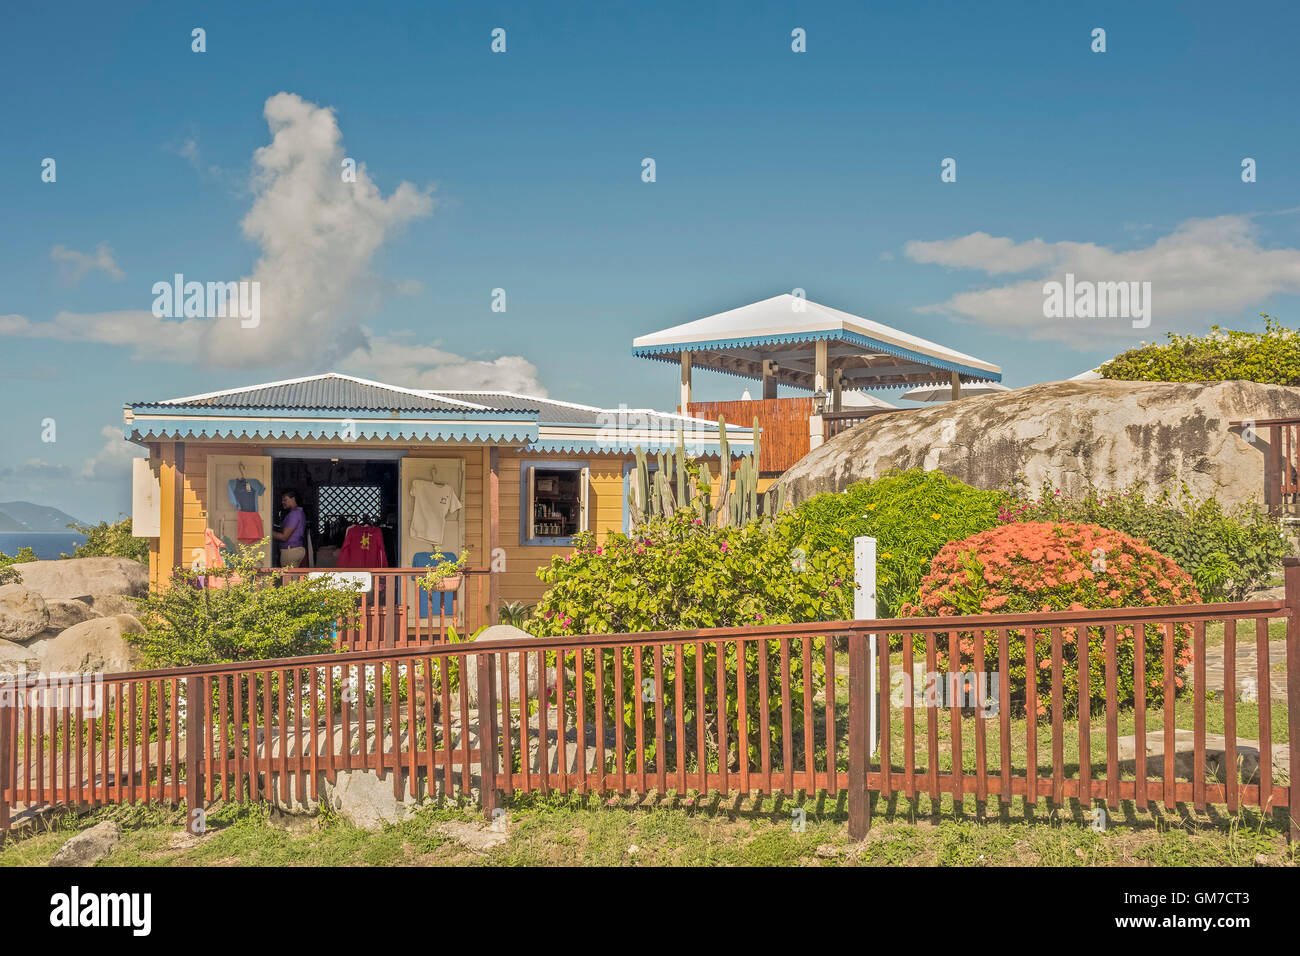 Le Parc National Bains de Virgin Gorda Îles Vierges Britanniques Antilles Banque D'Images